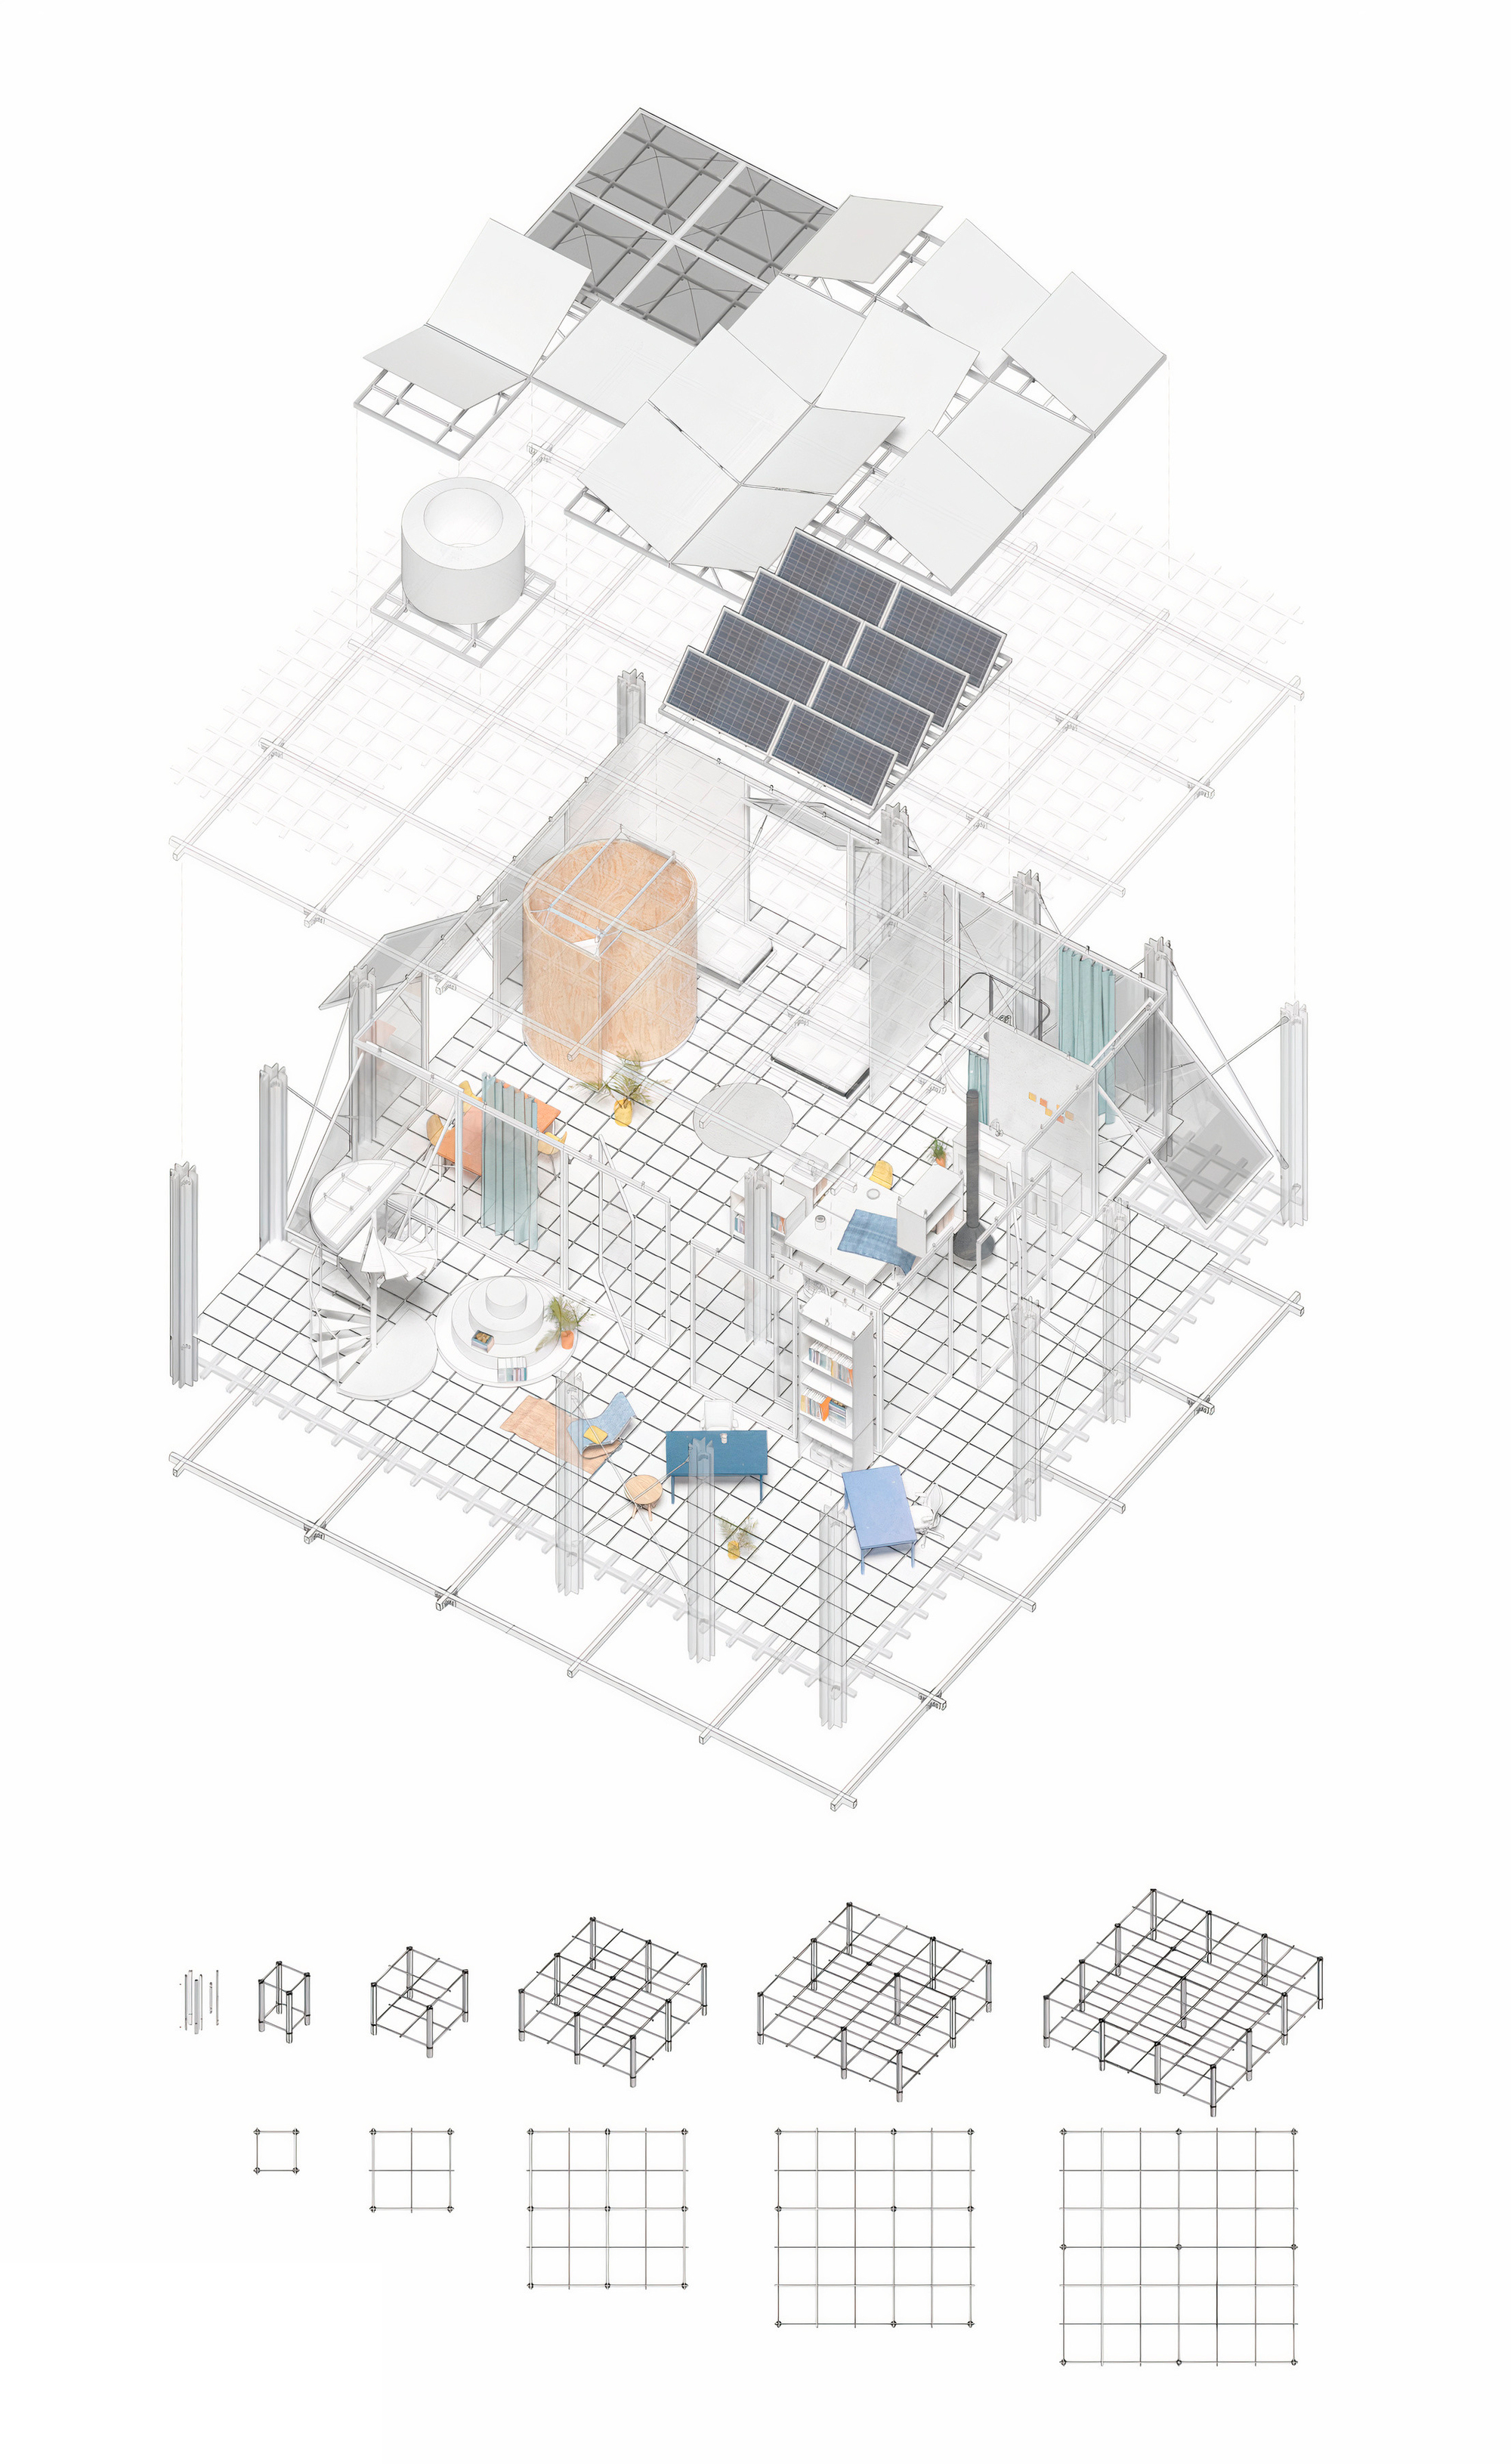 Как модульный дизайн может произвести революцию в жилищной архитектуре?